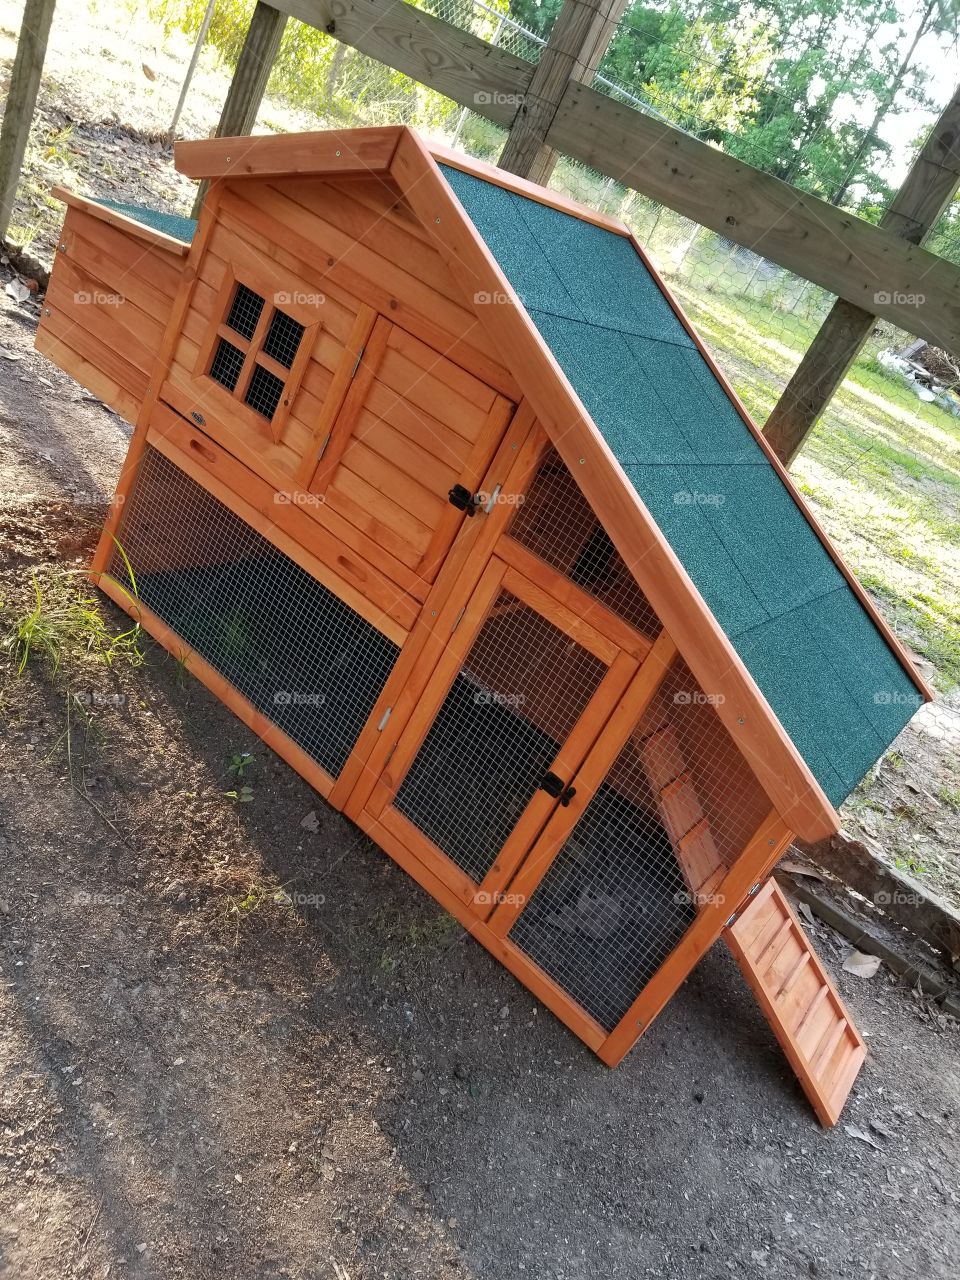 New chicken coop